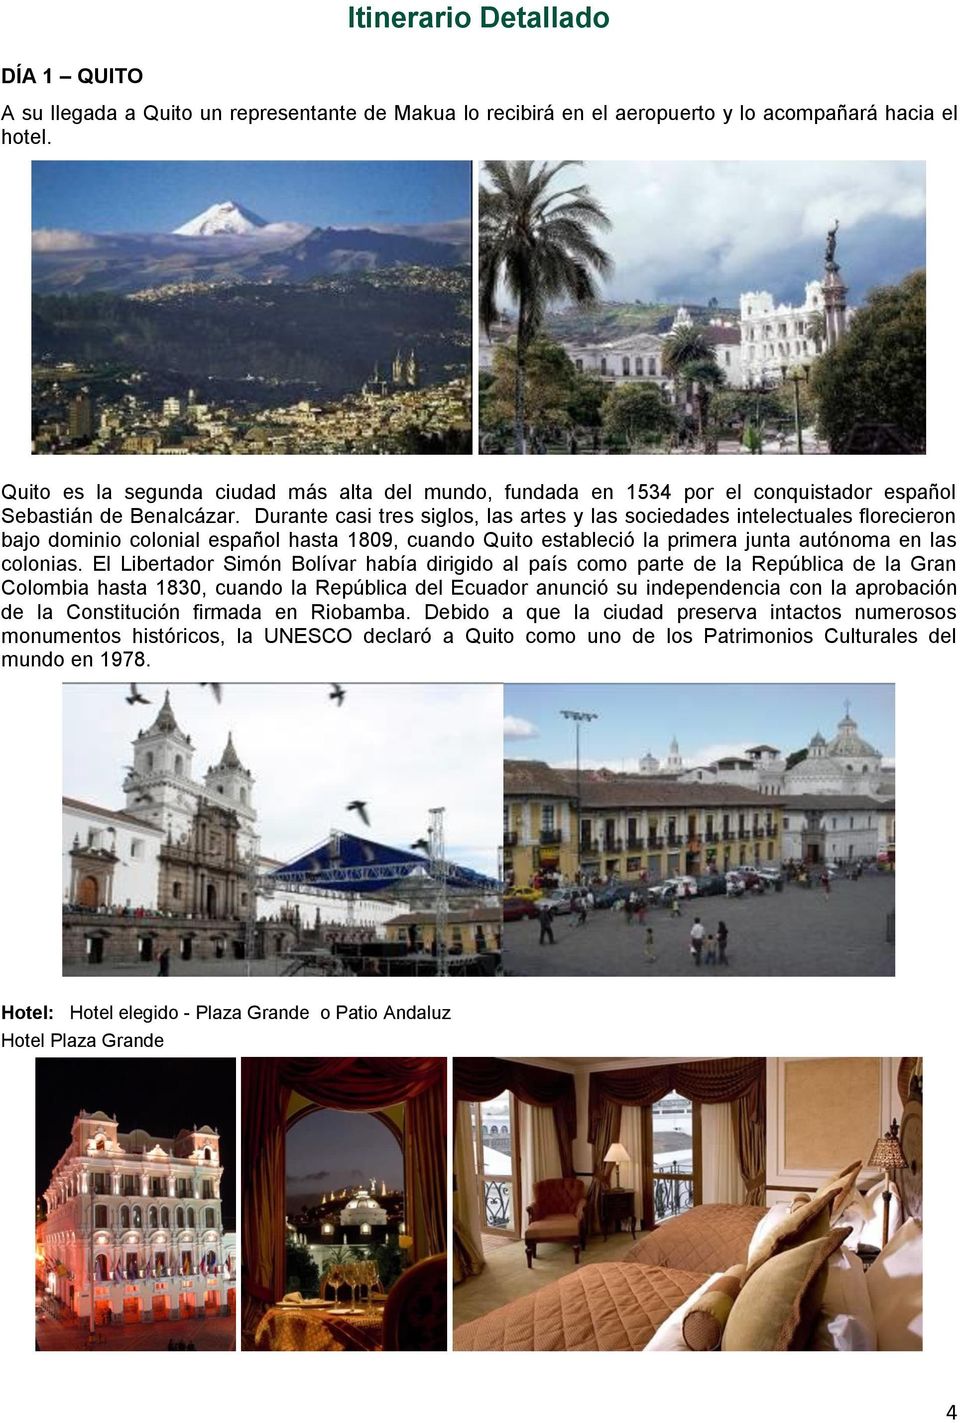 Durante casi tres siglos, las artes y las sociedades intelectuales florecieron bajo dominio colonial español hasta 1809, cuando Quito estableció la primera junta autónoma en las colonias.